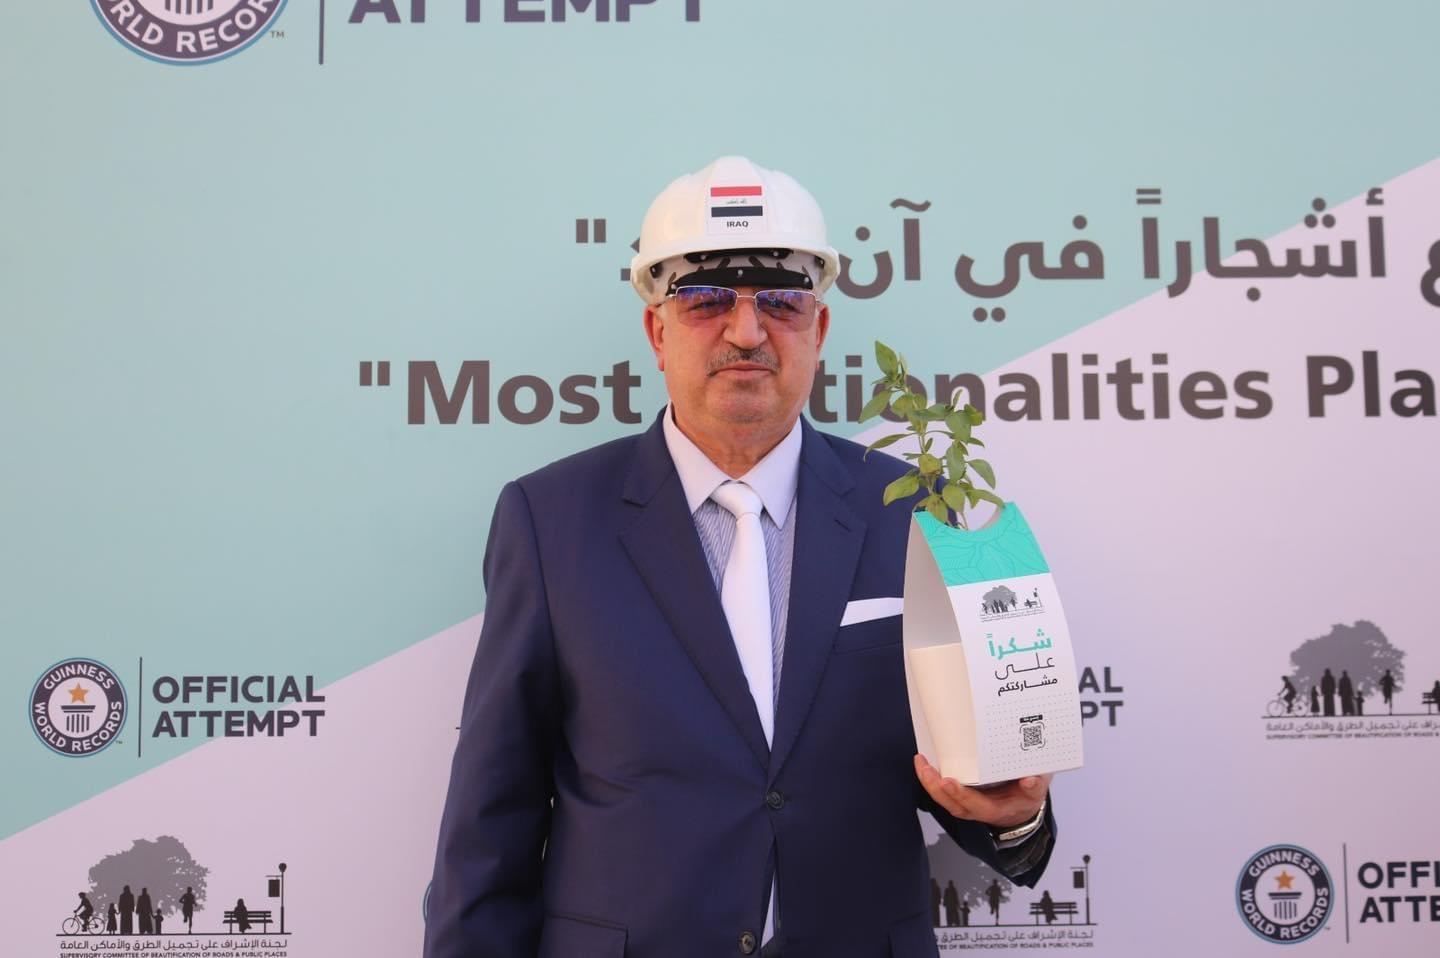 السفير عمر البرزنجي يقدم أجمل التهاني والتبريكات بمناسبة عيد العمال العالمي 